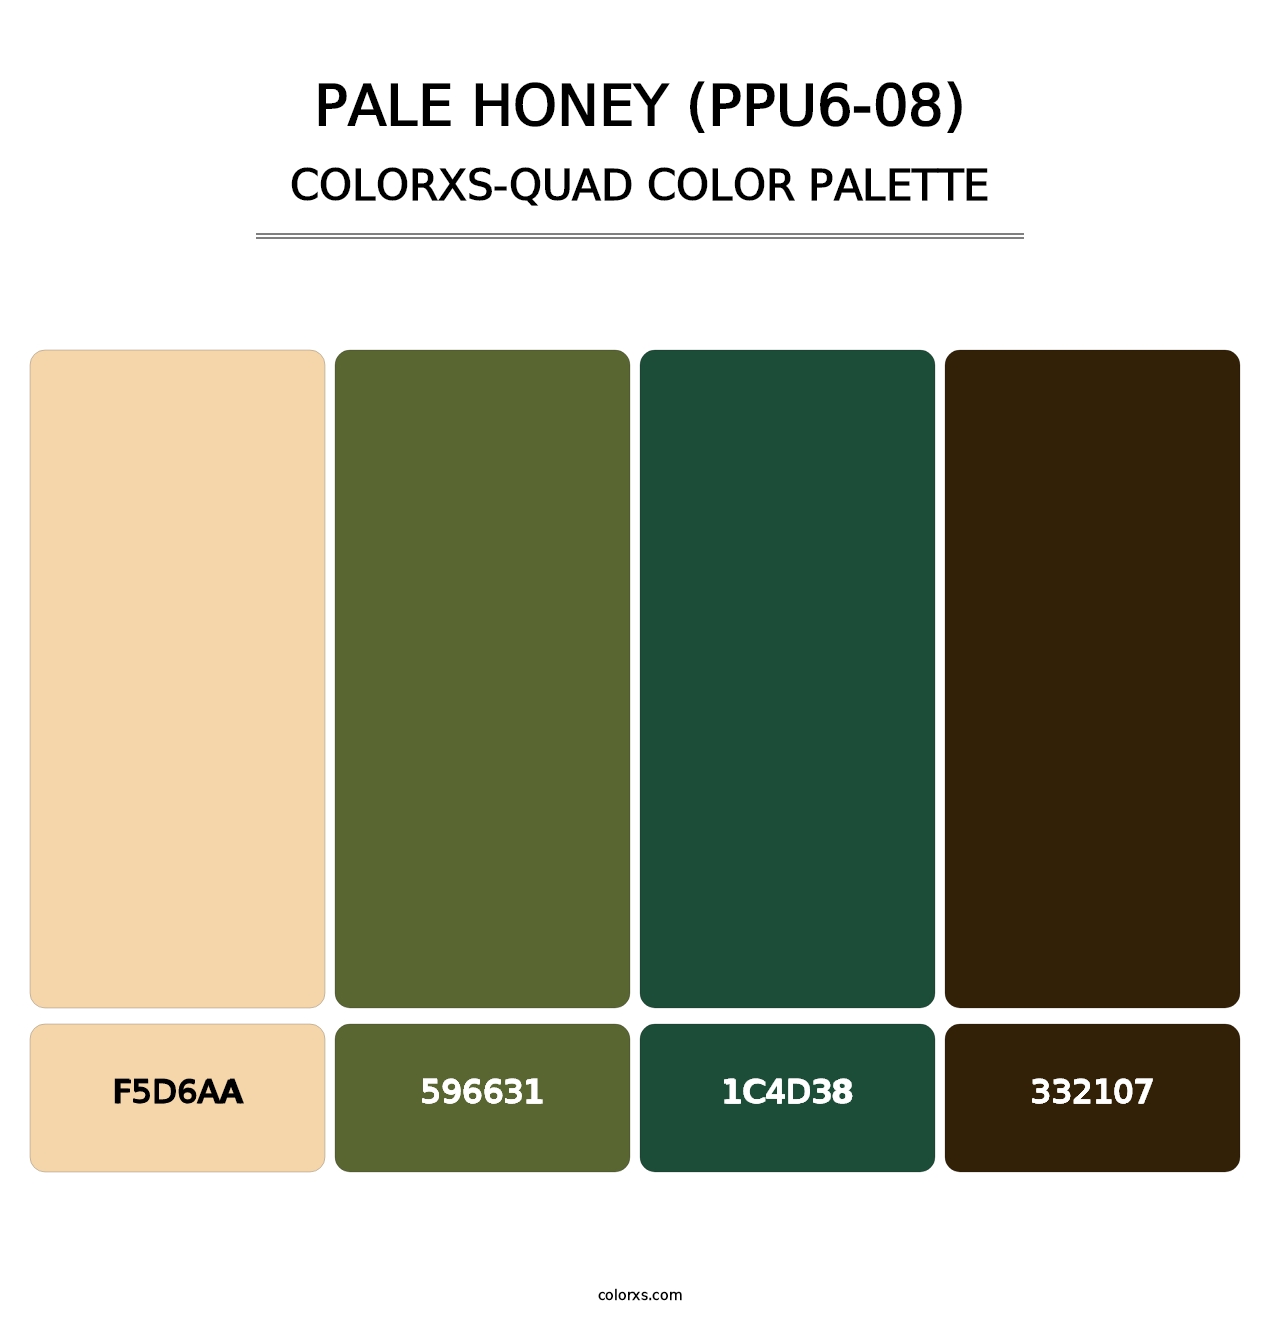 Pale Honey (PPU6-08) - Colorxs Quad Palette